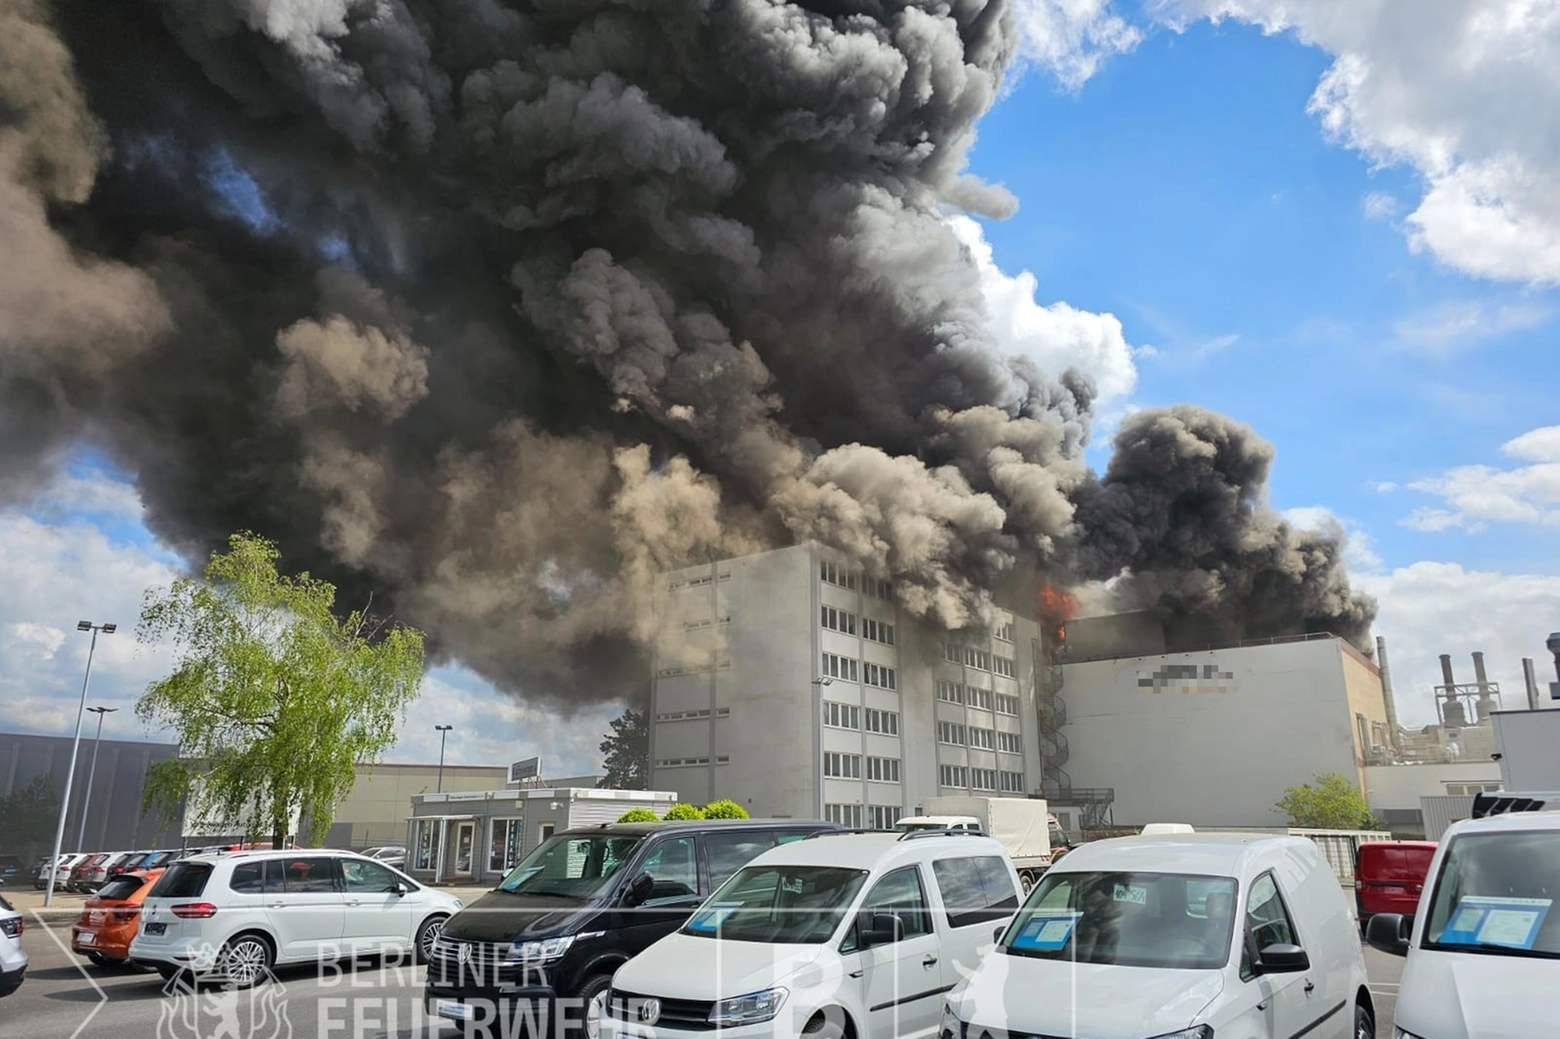 Incendio alla fabbrica di metalli di Berlino, foto dei vigli del fuoco locali